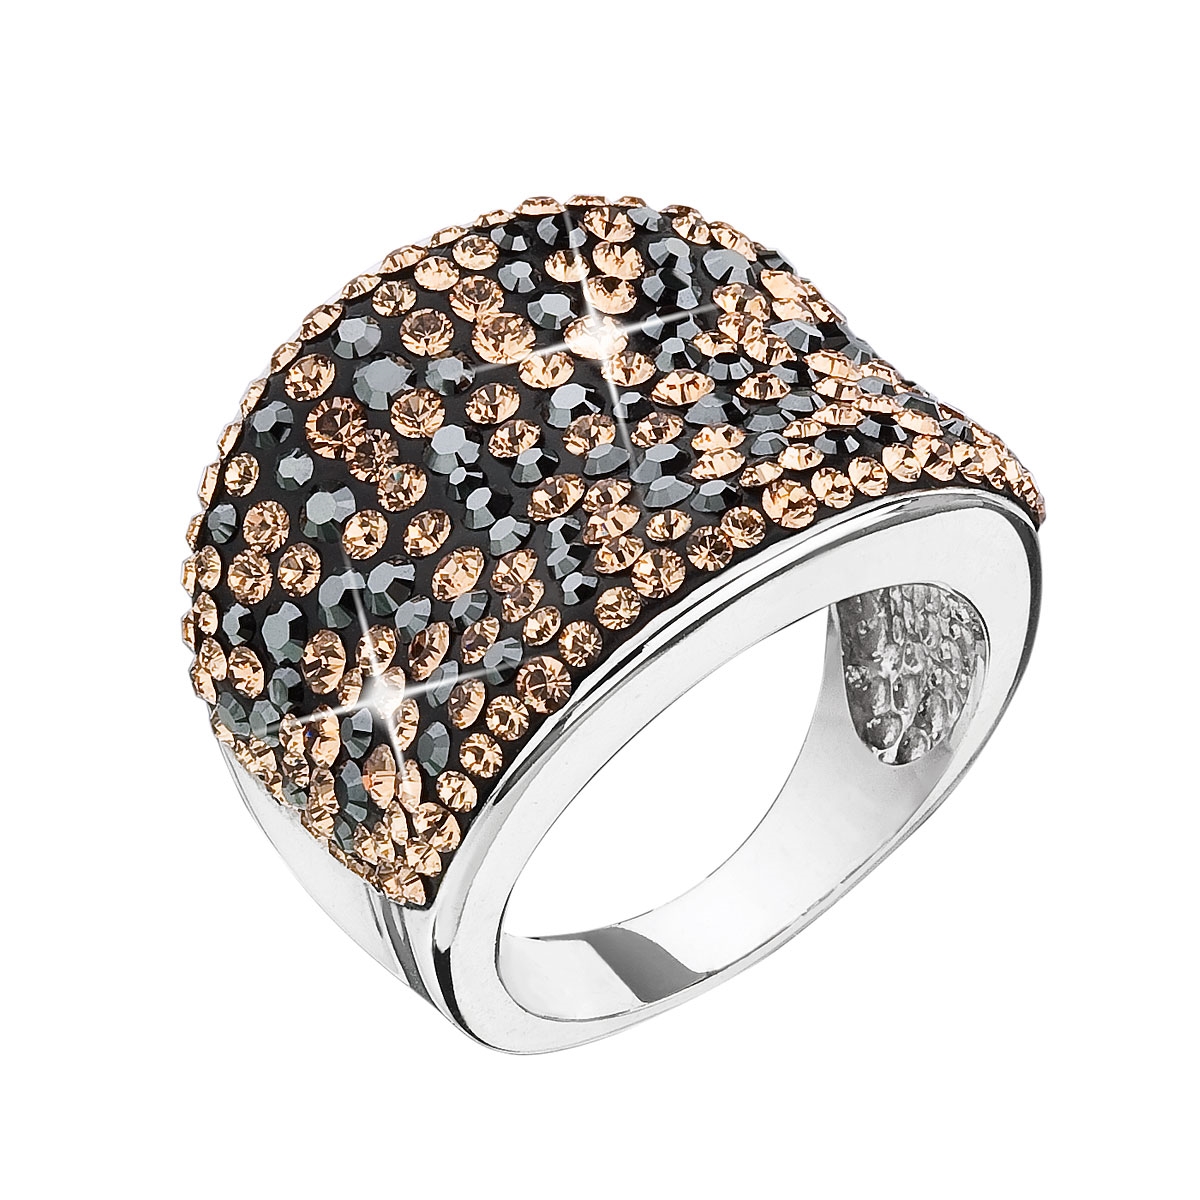 Strieborný prsteň s kameňmi Crystals from Swarovski ® Colorado, veľ: 52